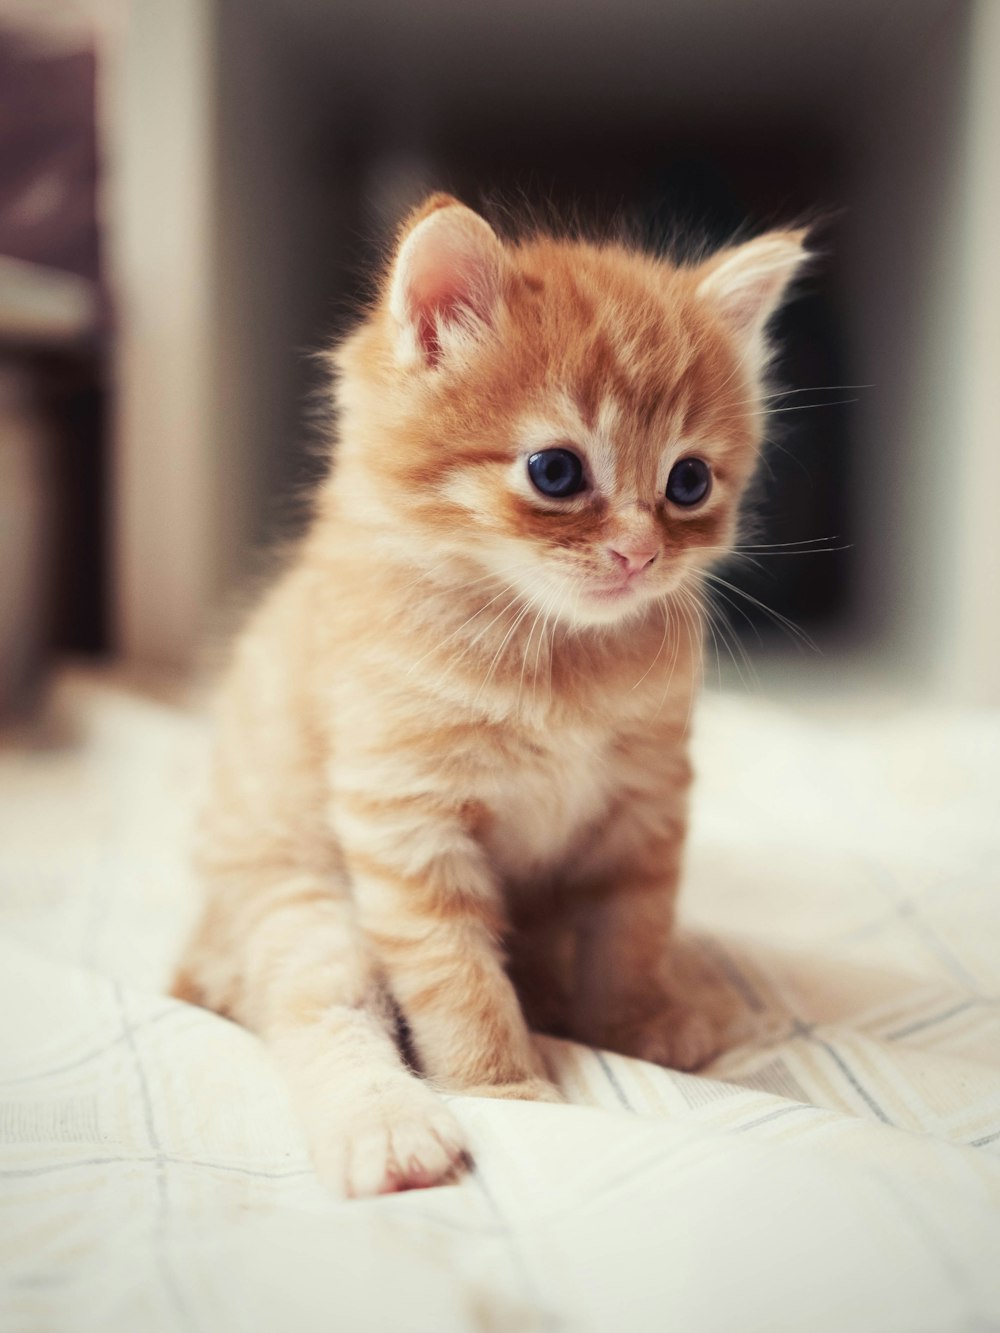 침대 위에 앉아있는 작은 주황색 새끼 고양이